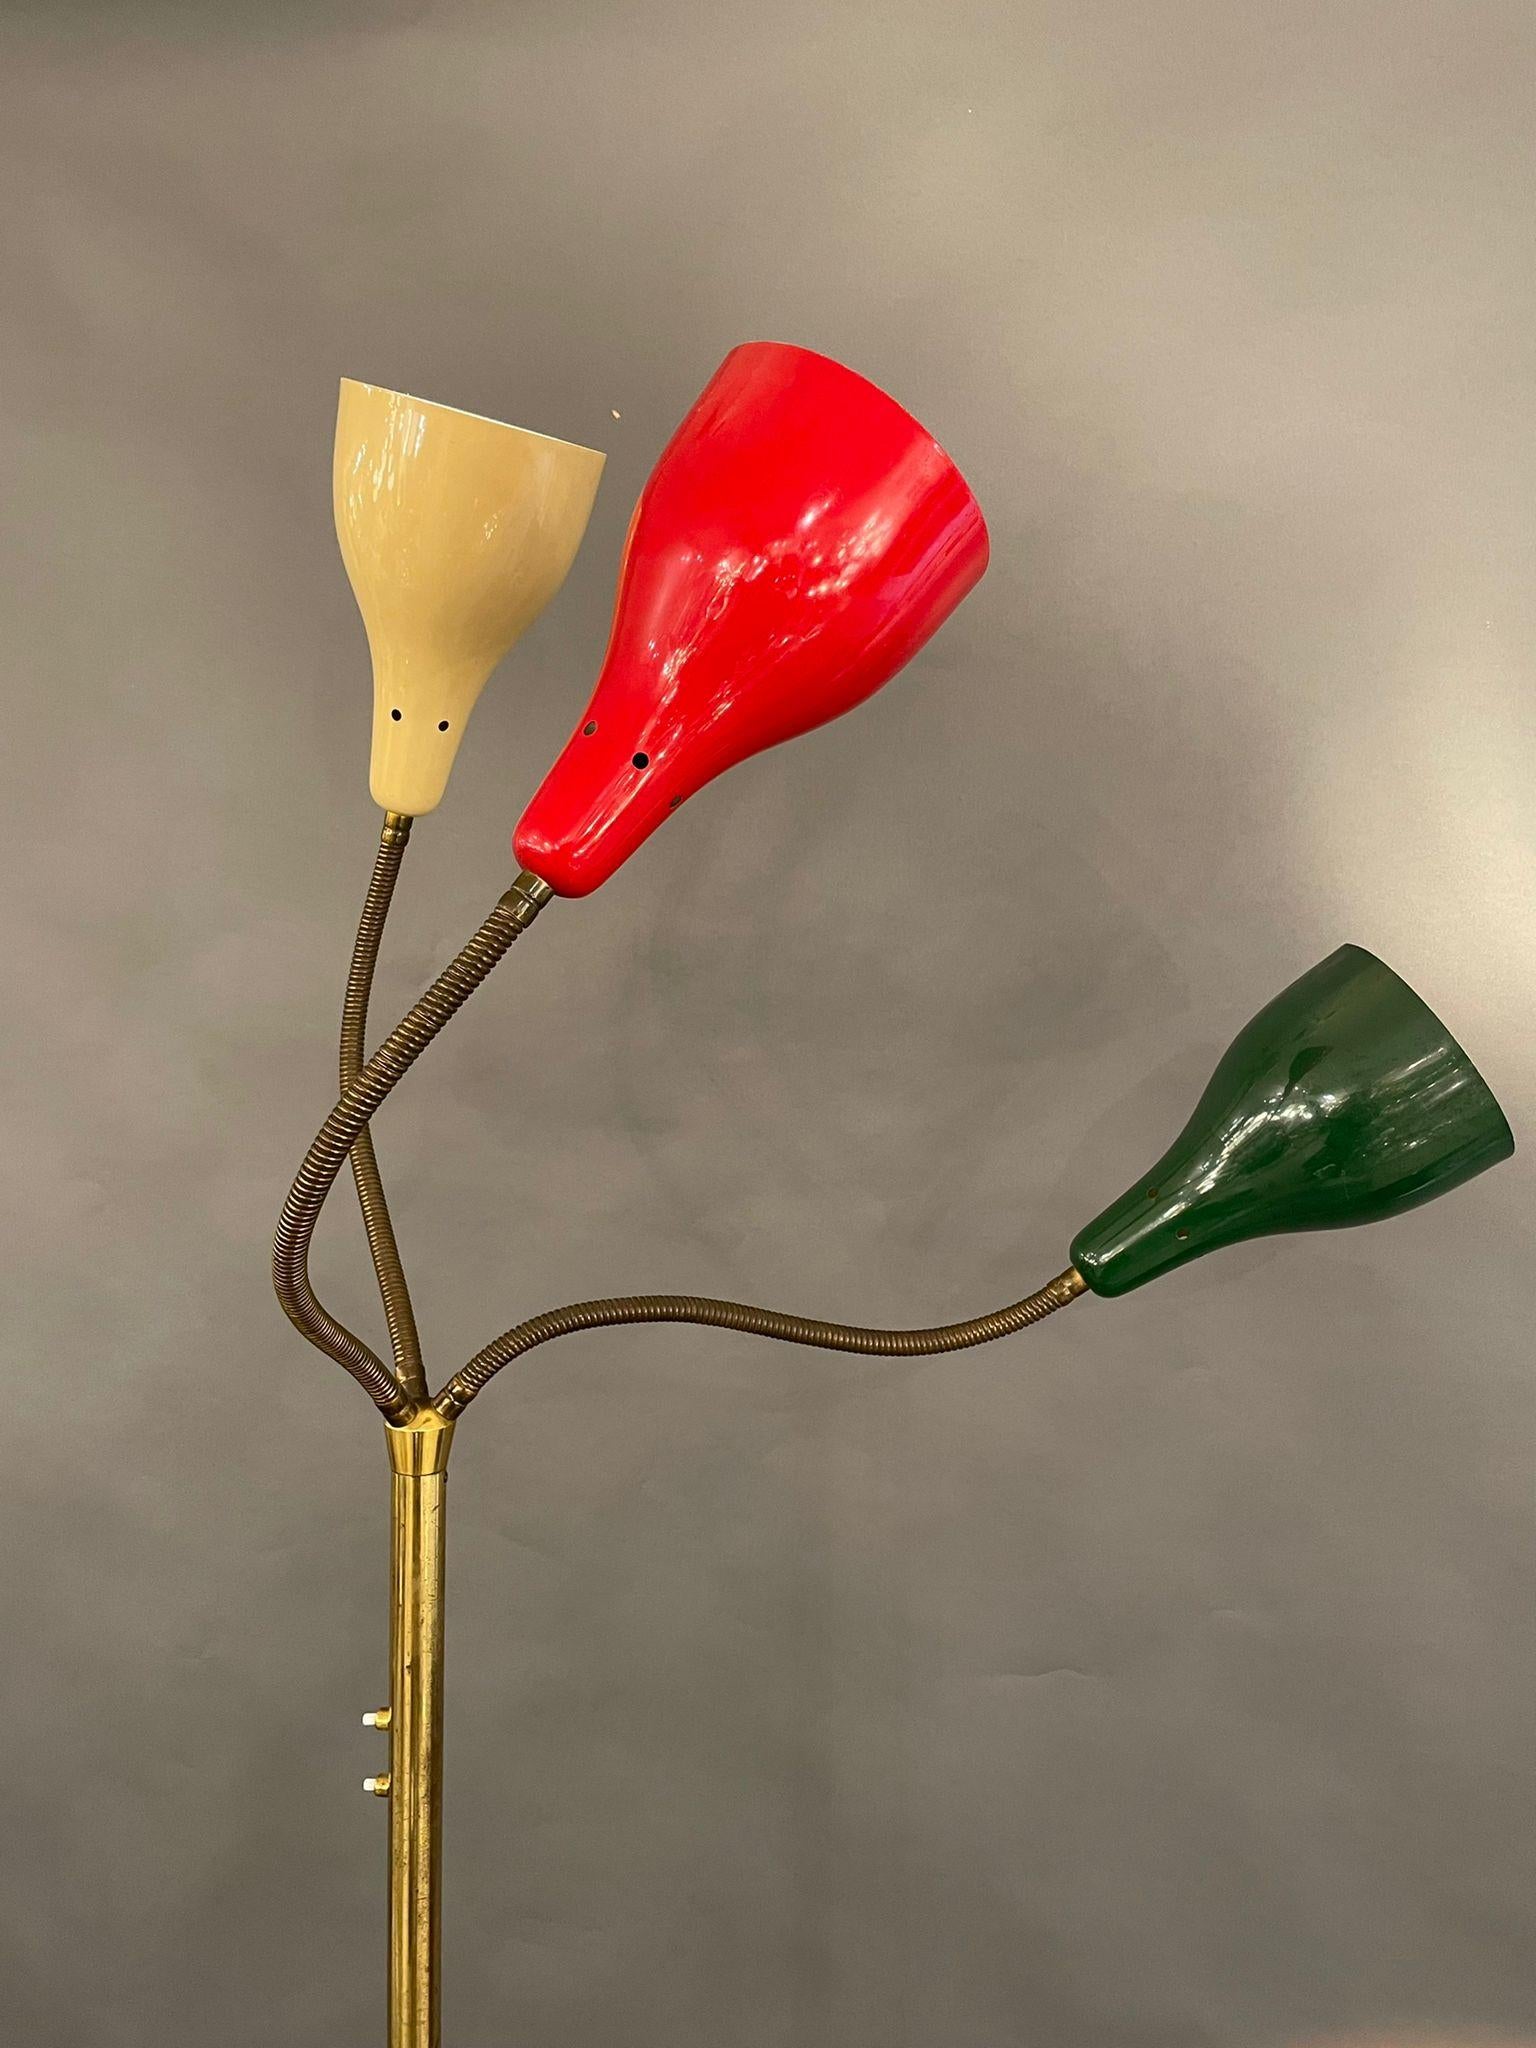 Rare Lampadaire de Giuseppe Ostuni, OLuce, Italie, 1950.

Laiton poli, 3 bras flexibles avec réflecteurs peints d'origine
rouge, blanc, vert

La lampe est en bon état vintage.